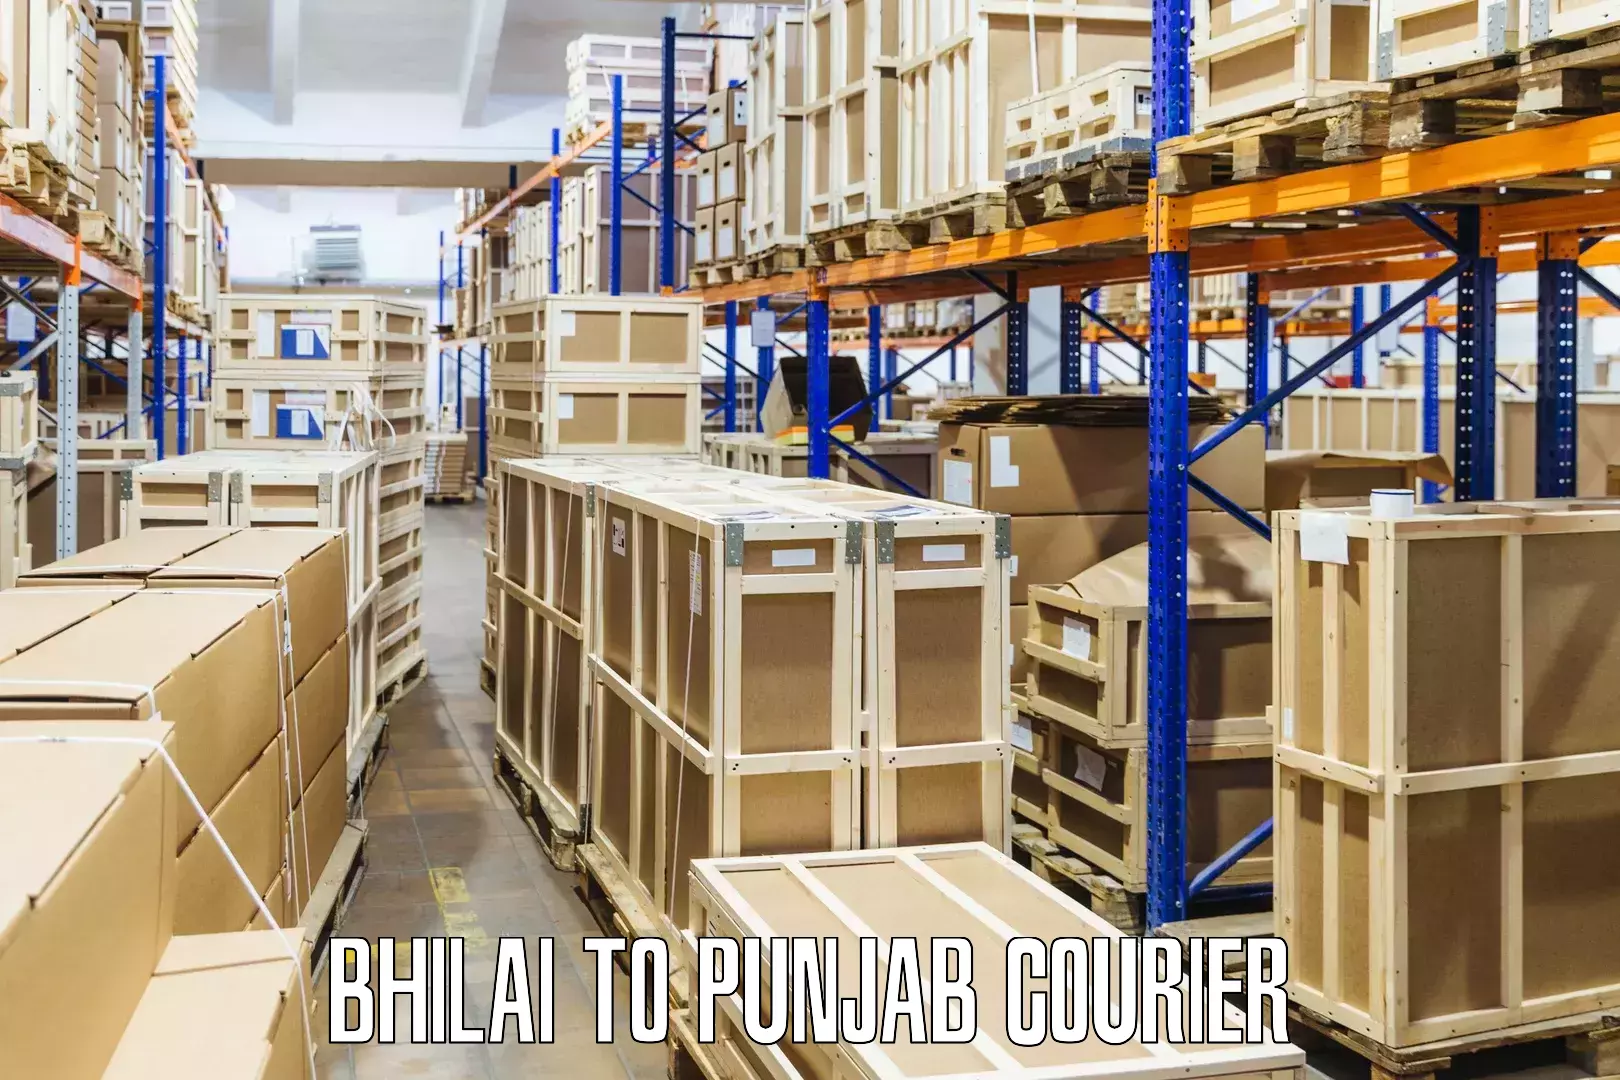 Customer-focused courier Bhilai to Moga